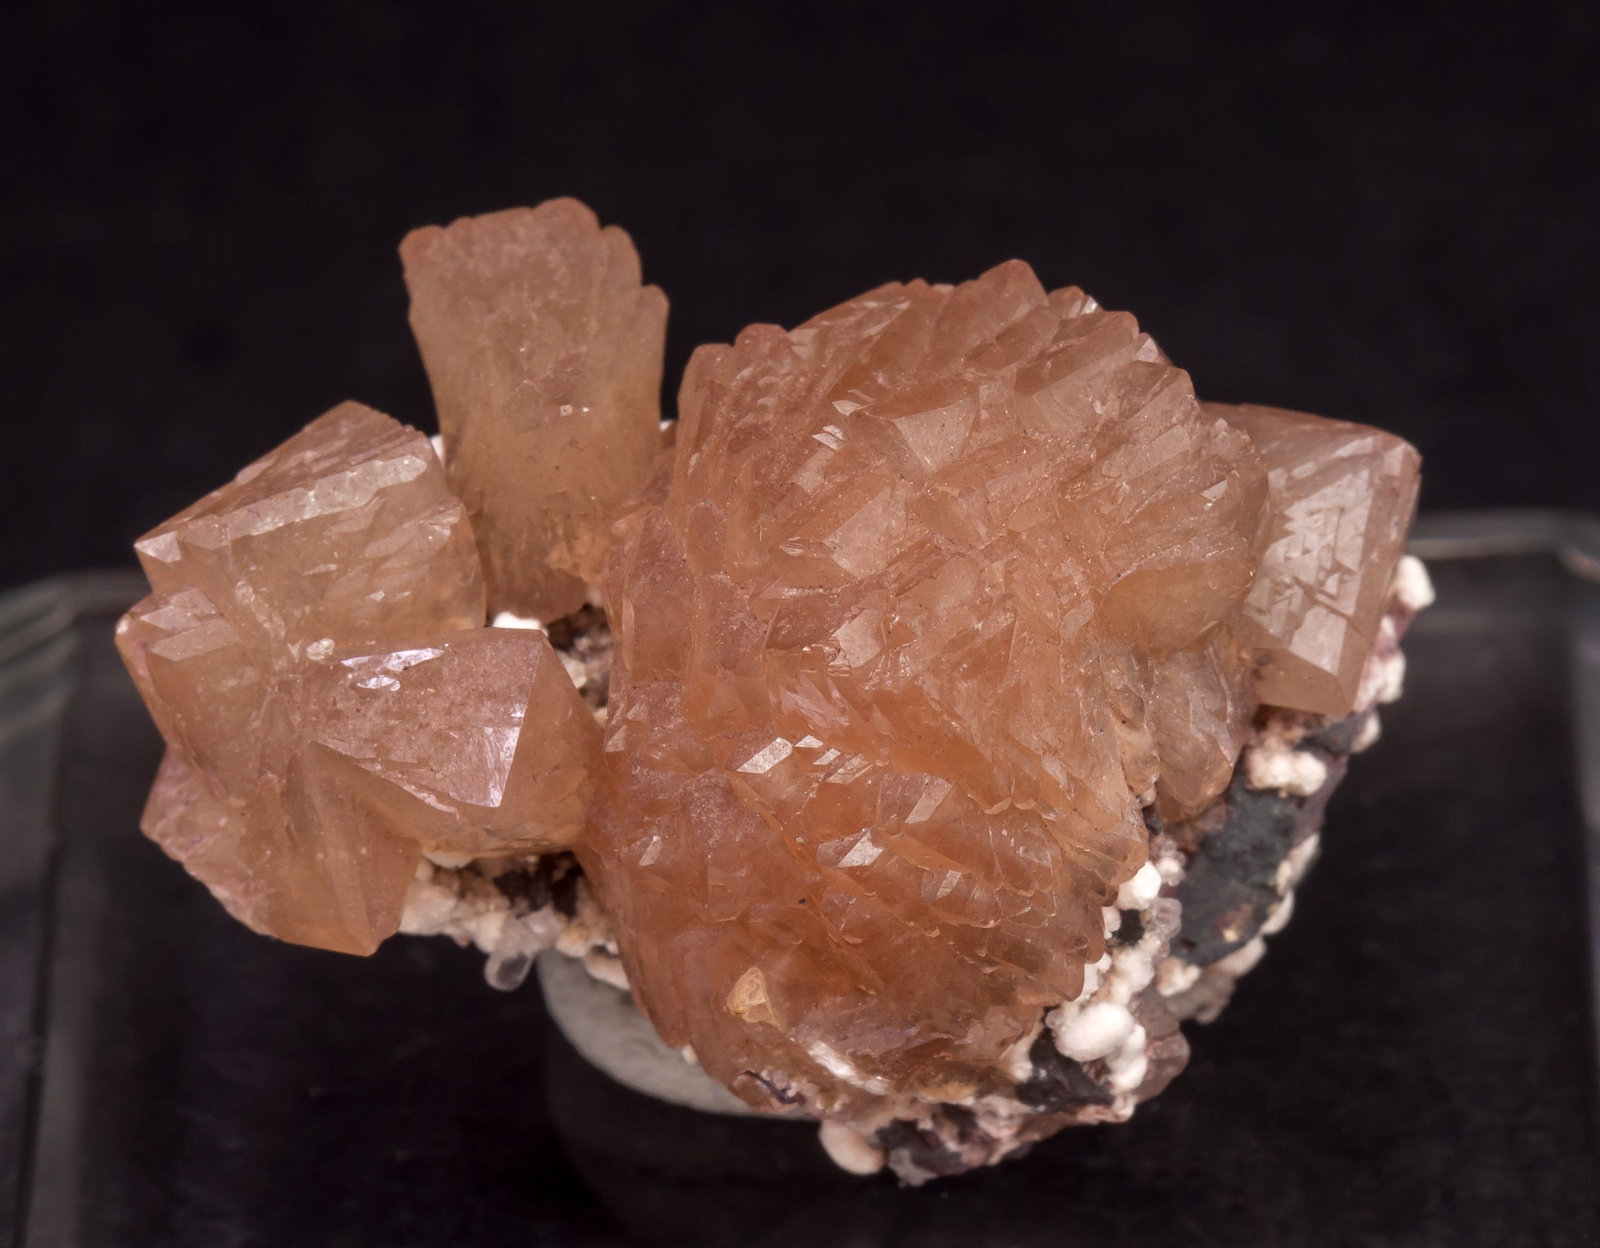 specimens/s_imagesAL5/Olmiite-MG96AL5f.jpg